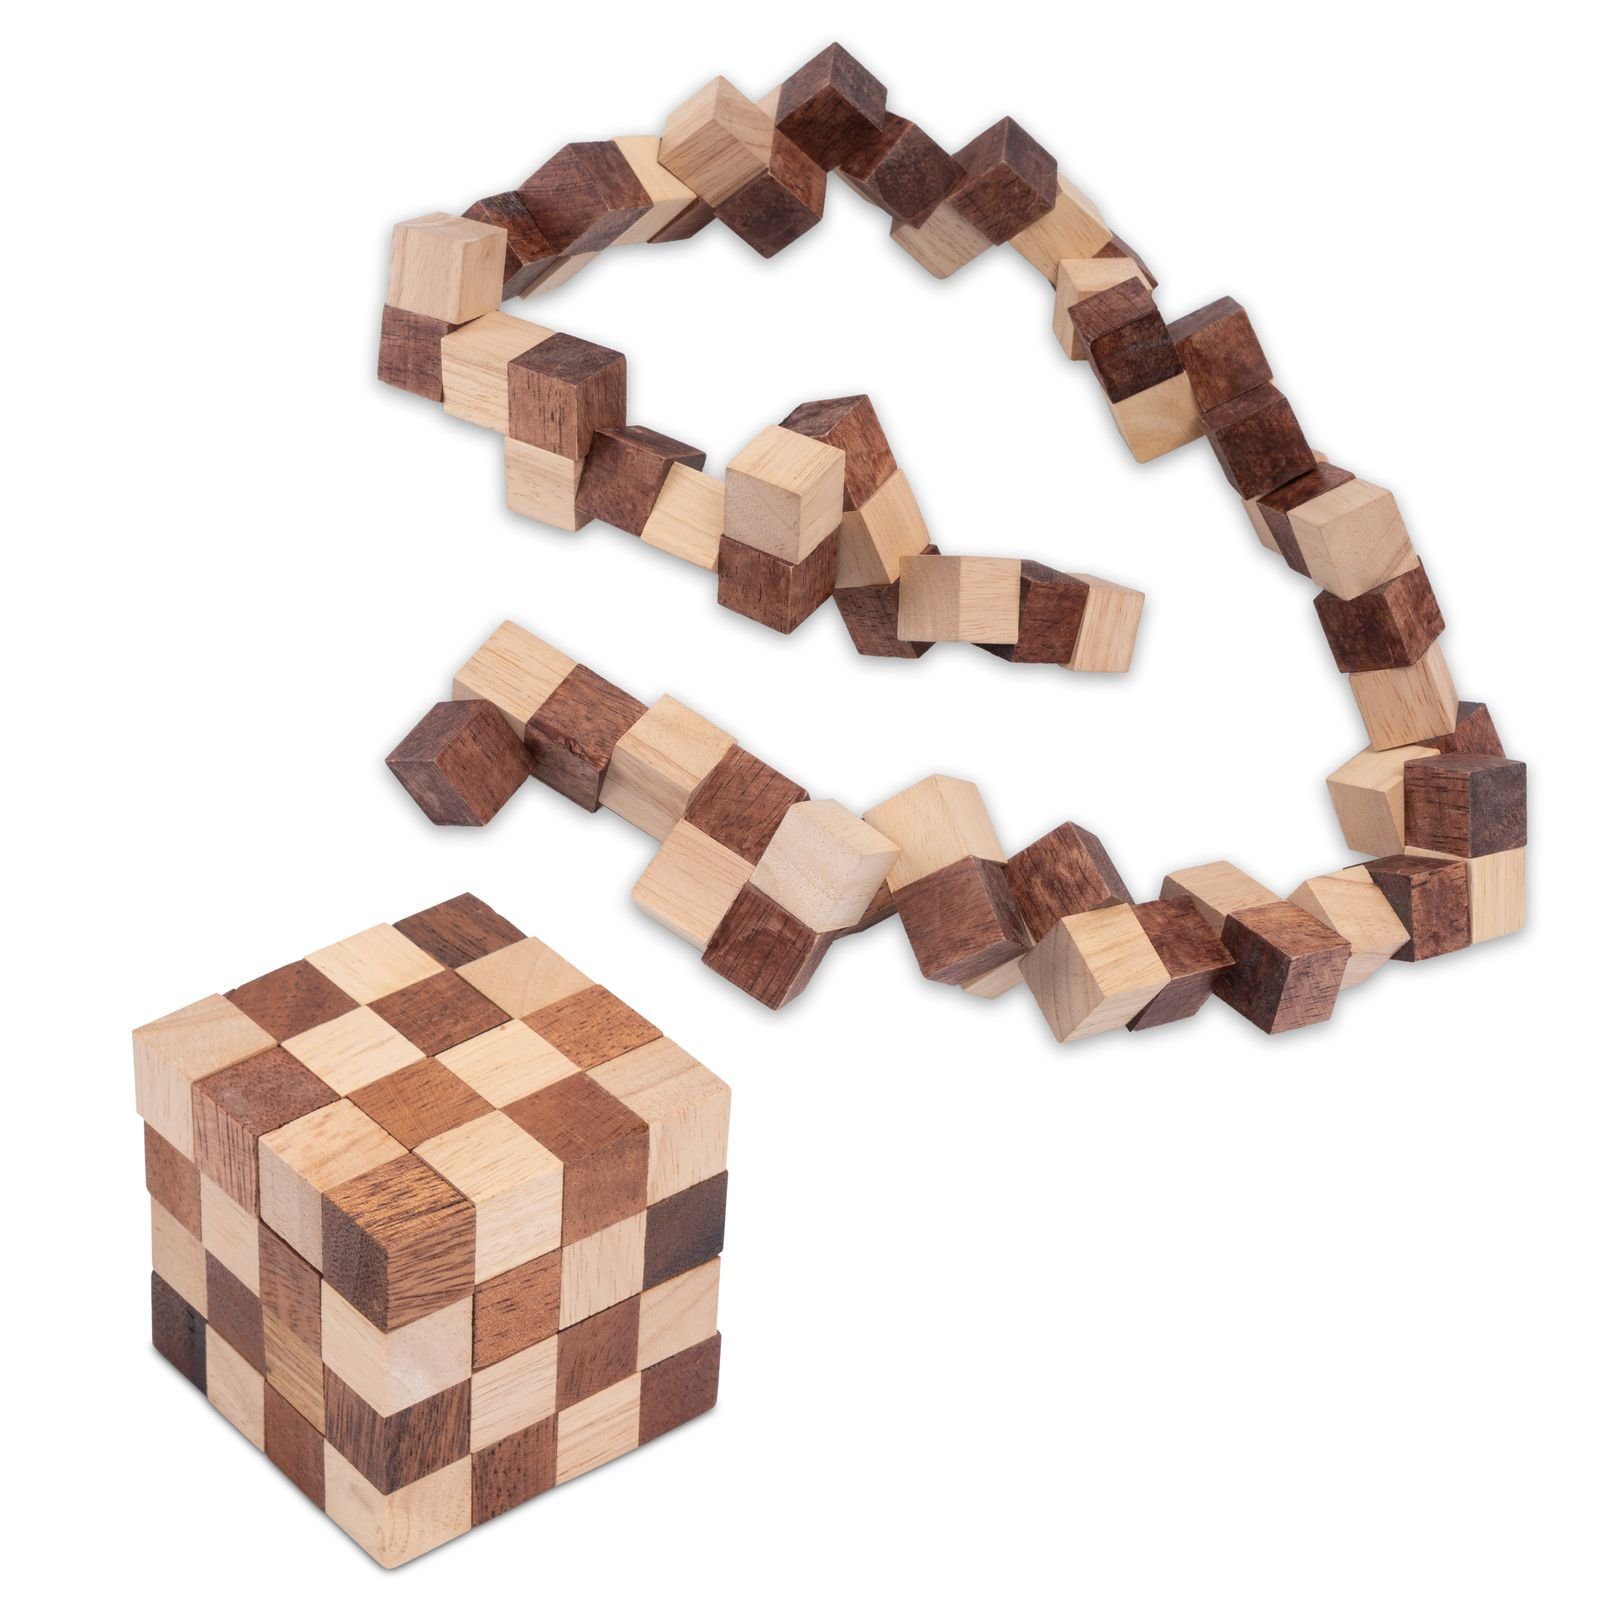 Logoplay Holzspiele Spiel, Schlangenwürfel 4x4 Gr. S - 6 cm Kantenlänge - Snake Cube - 3D Puzzle aus Holz Holzspielzeug